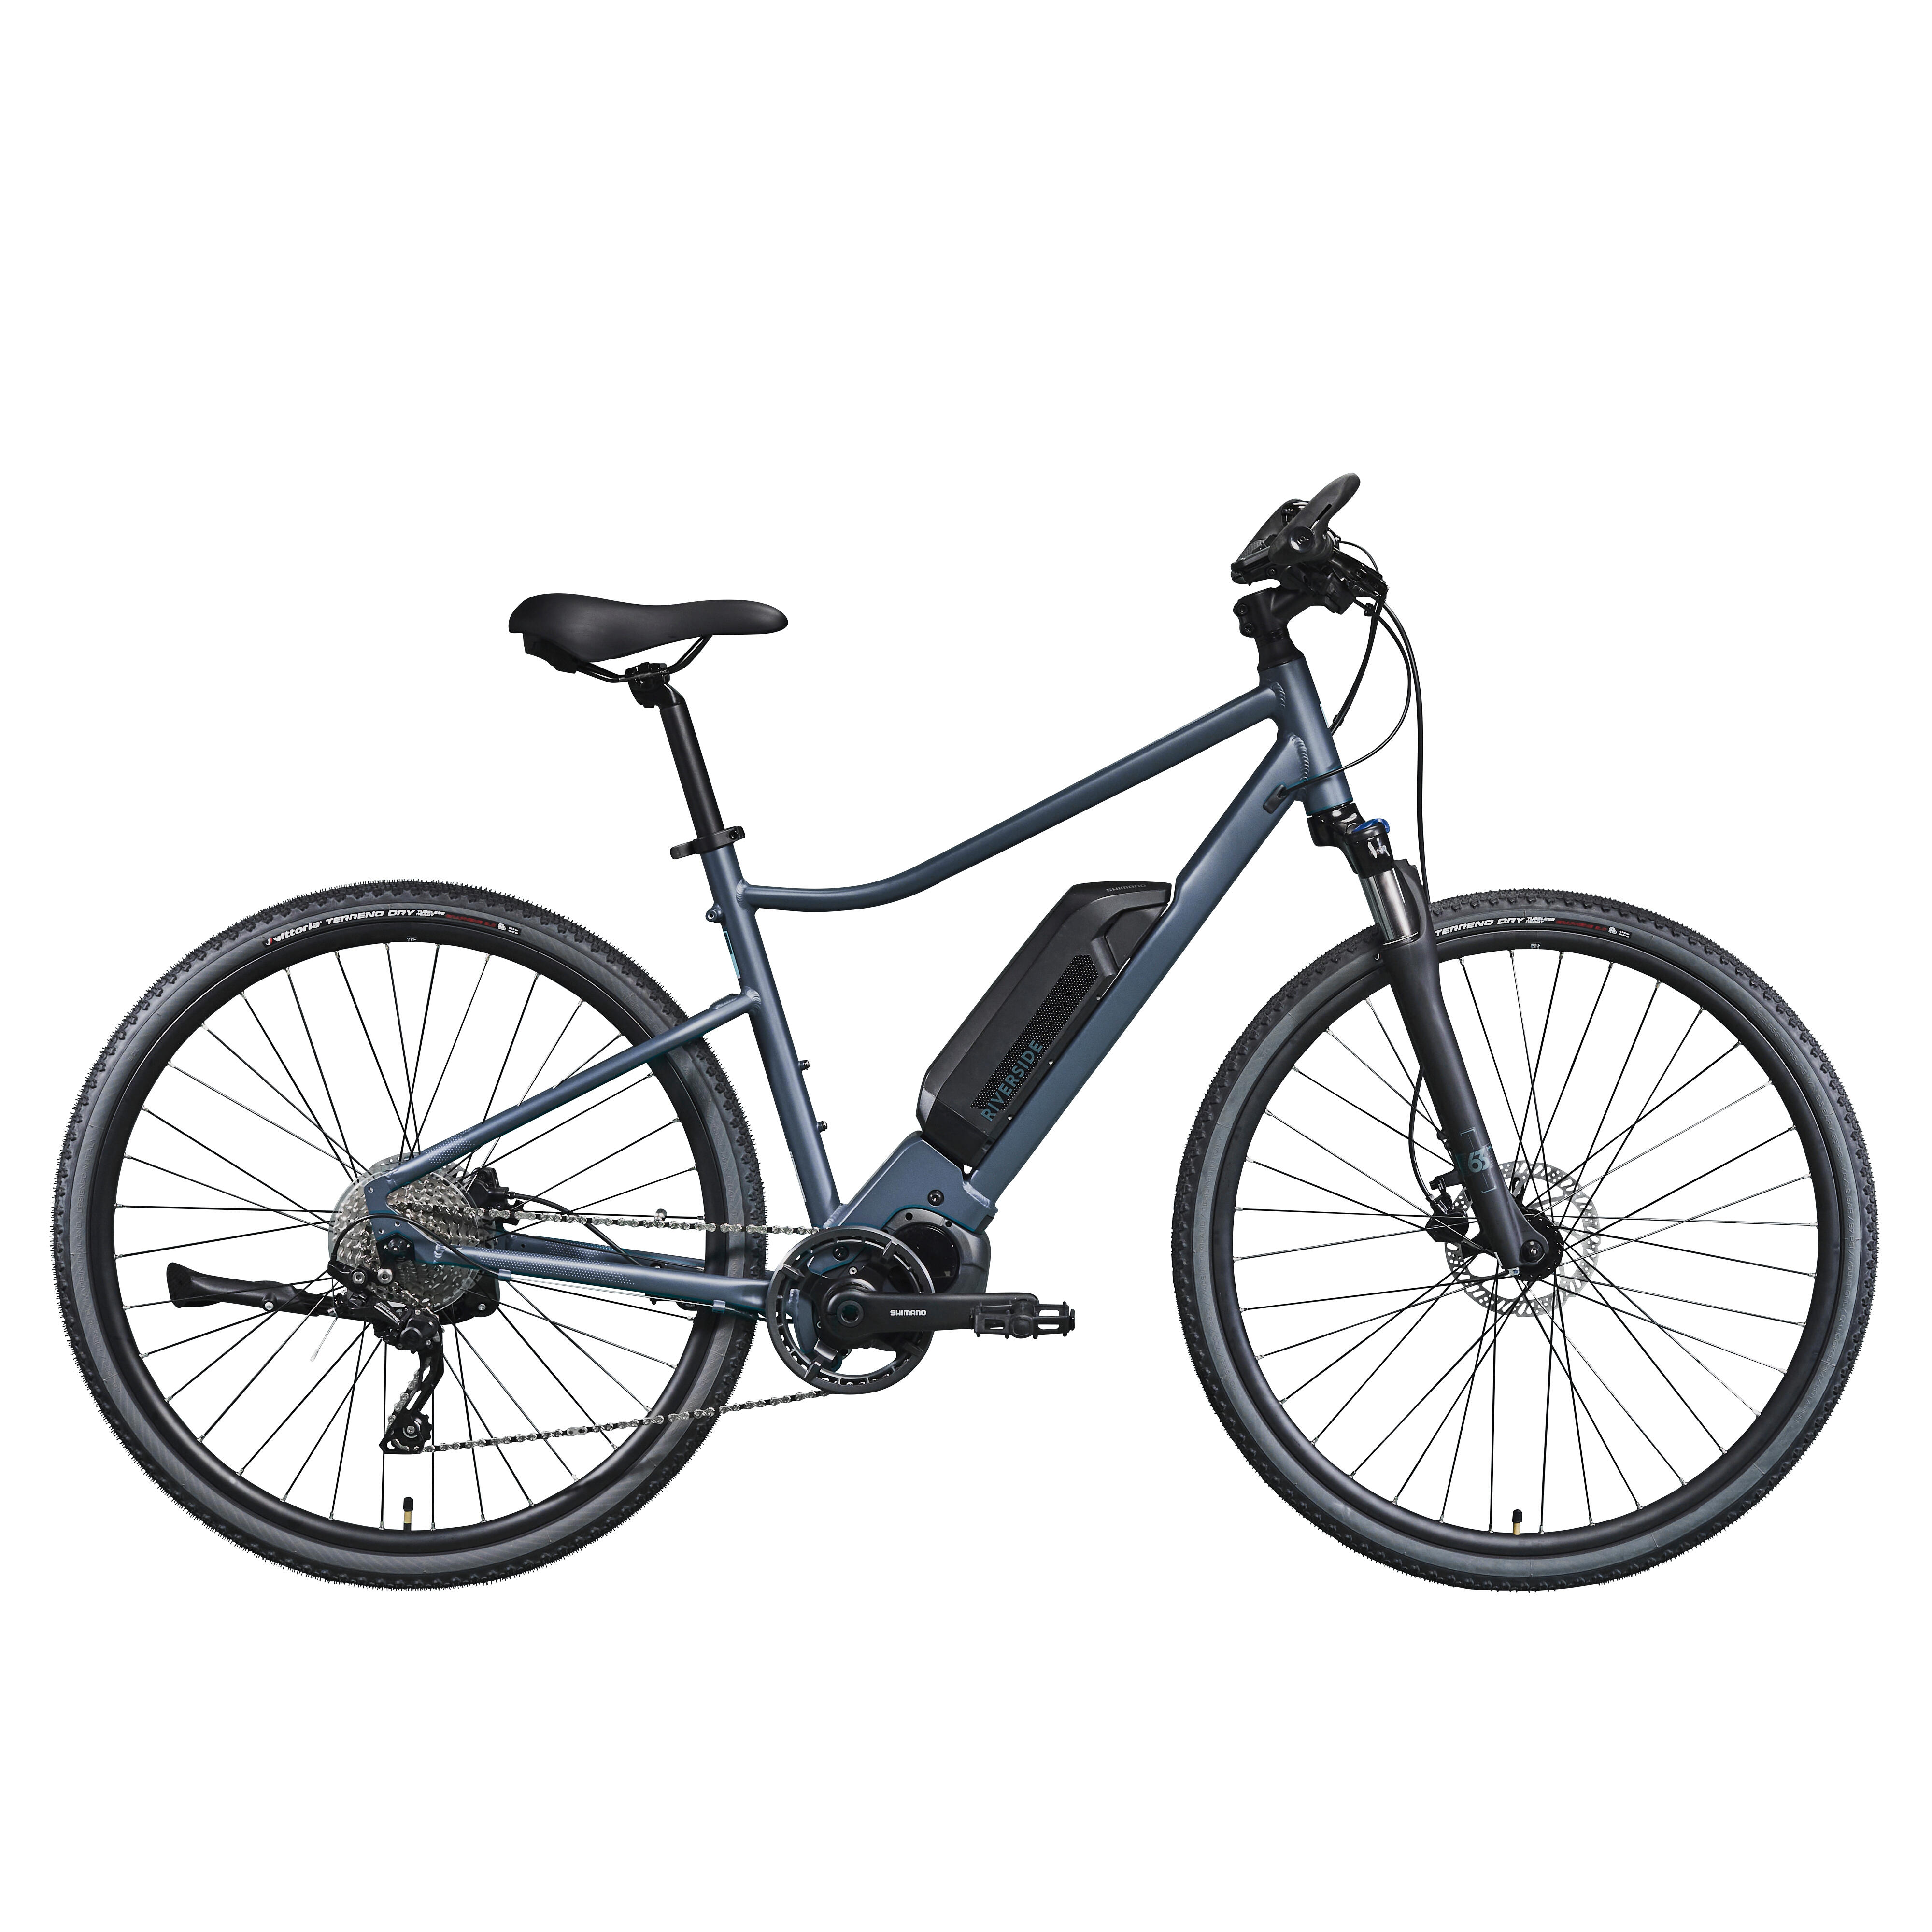 Bicicletă polivalentă electrică RIVERSIDE 540 E Albastru-Negru La Oferta Online decathlon imagine La Oferta Online